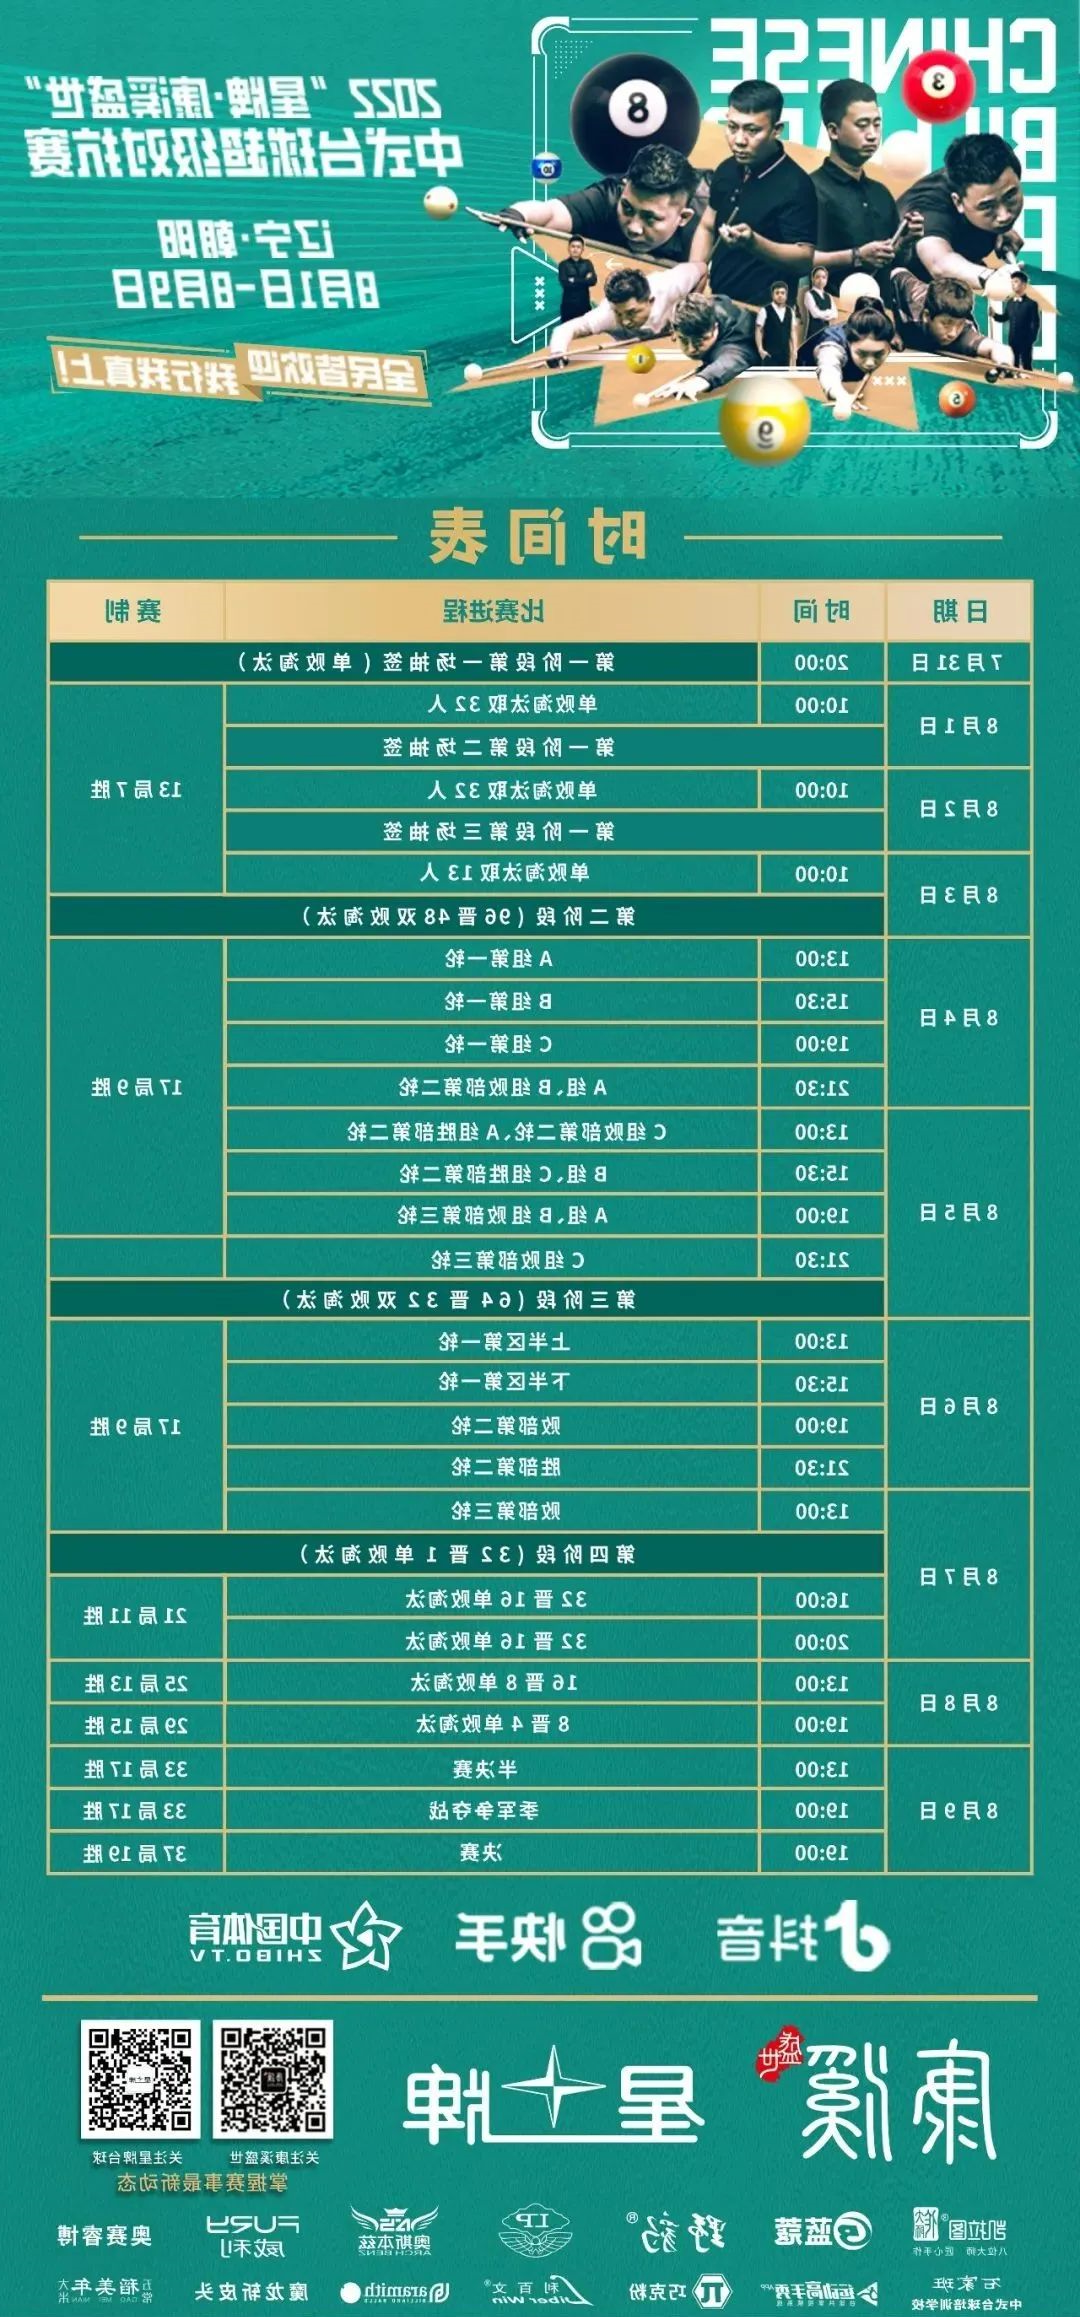 中式台球超级对抗赛第二站8月1日打响 看高手过招 就在kok娱乐平台
直播间